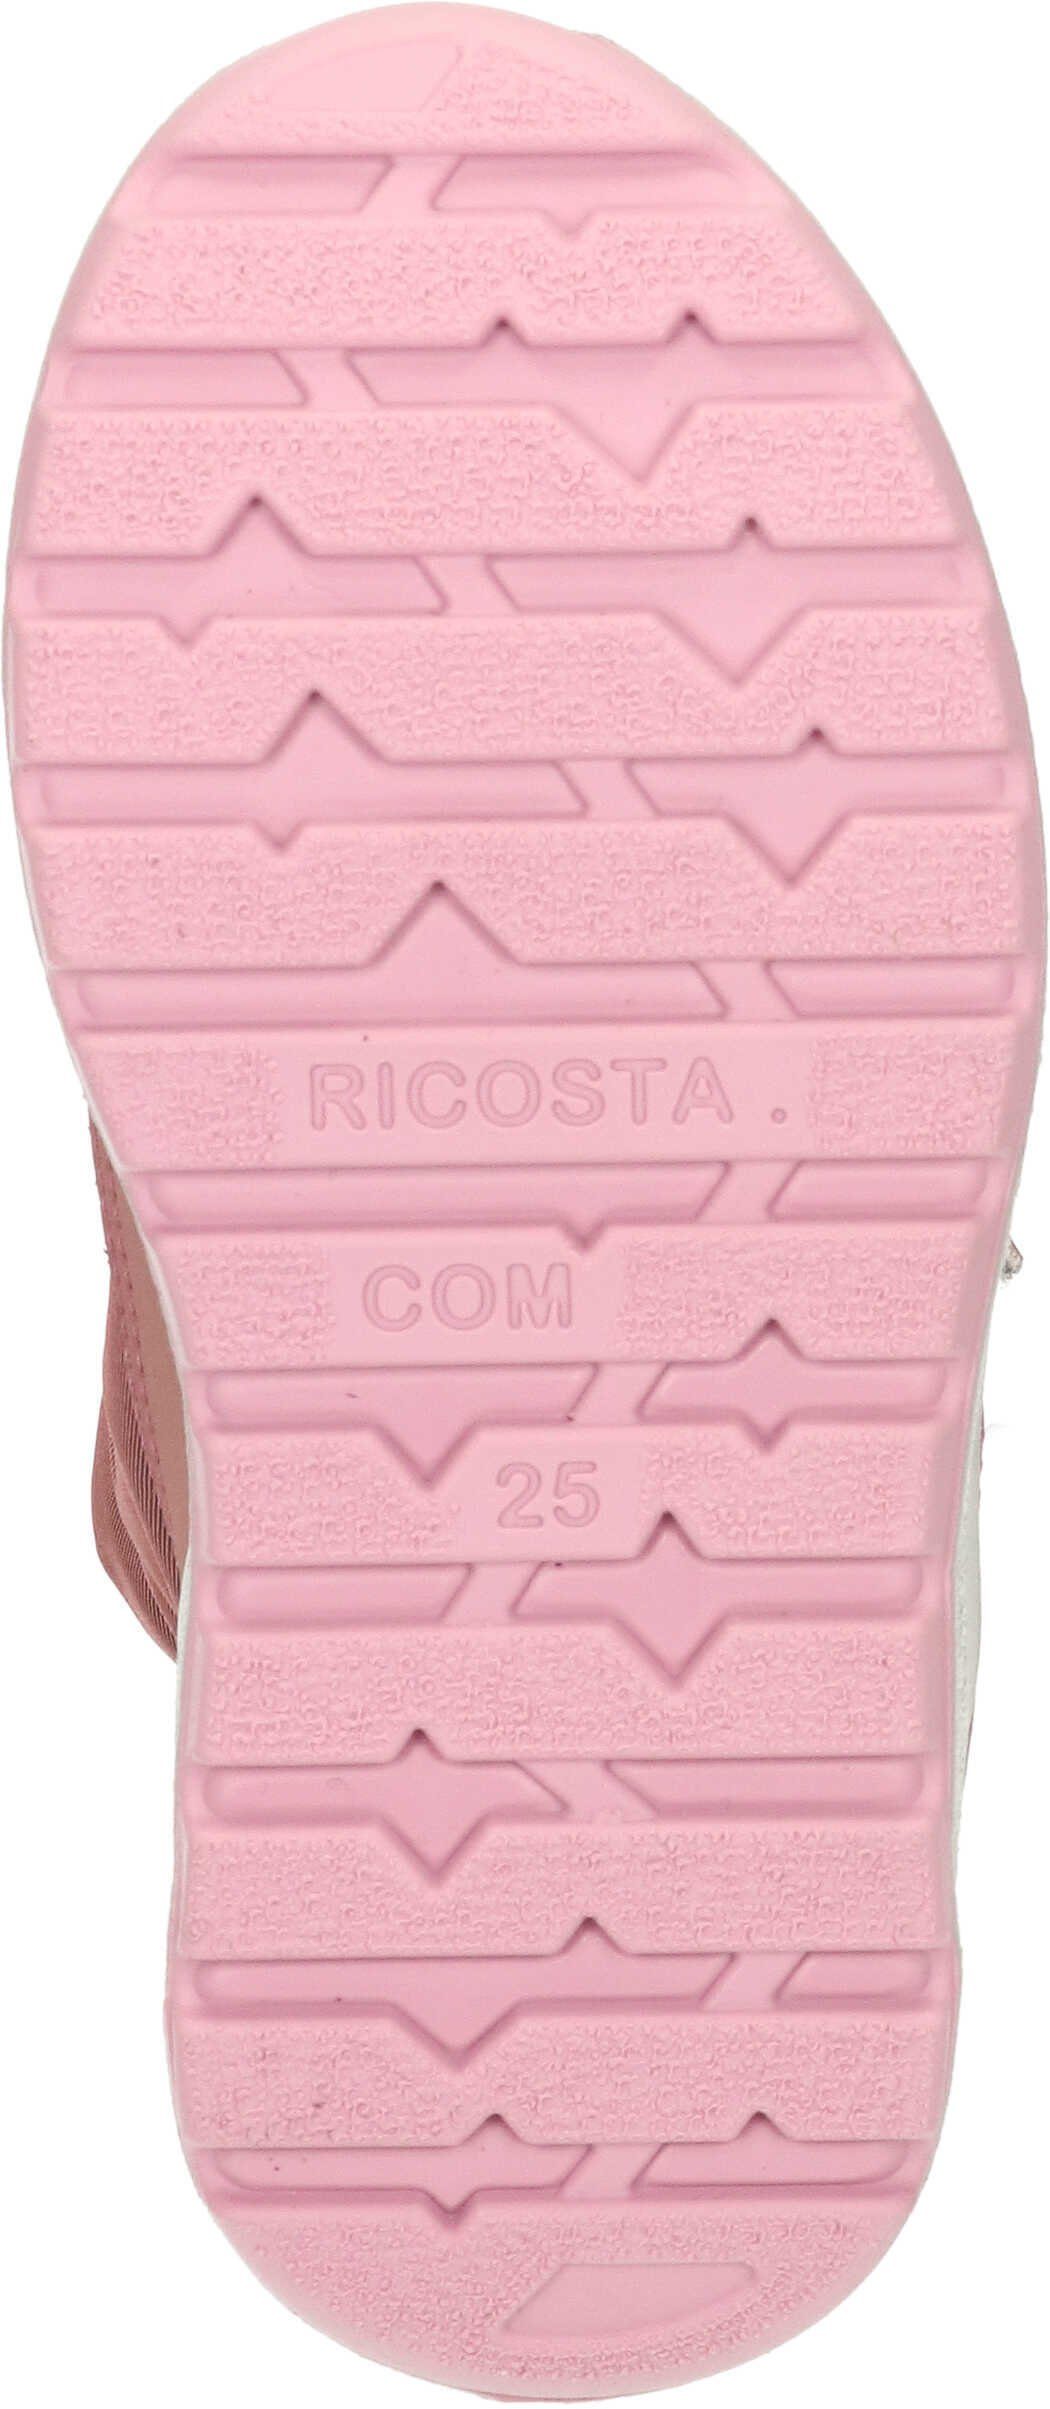 SYMPATEX Stiefel (320) Ricosta mit Winterstiefel sucre/candy